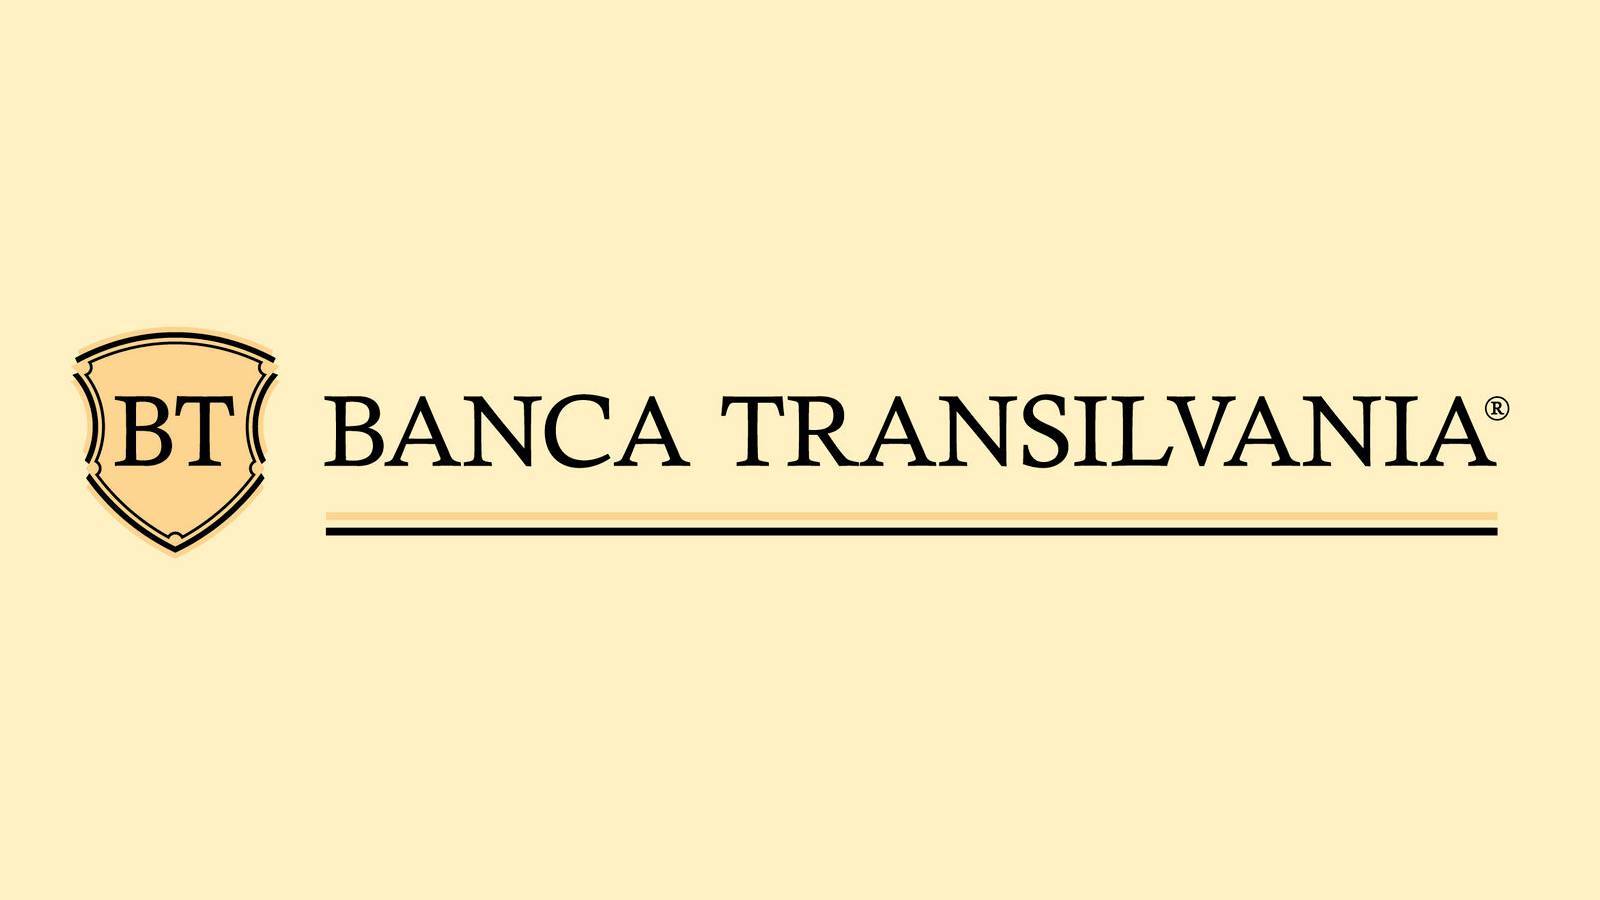 BANCA Transilvania Officieel besluit LAATSTE MOMENT BELANGRIJKE Maatregelen aangekondigd aan Roemenië